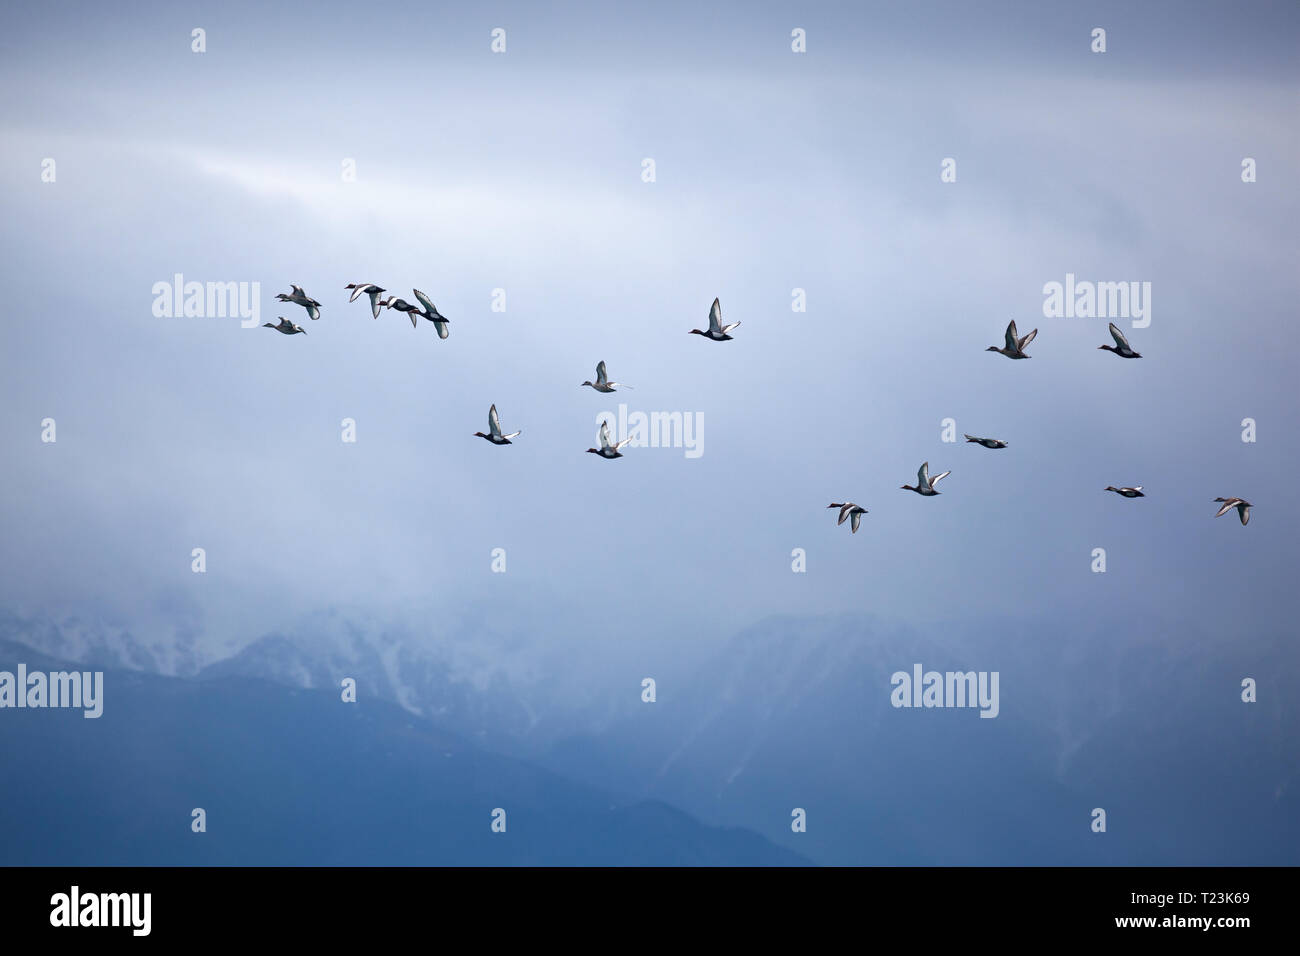 Herde von der Ente an verschneite Berge bei bedecktem Himmel Hintergrund Stockfoto